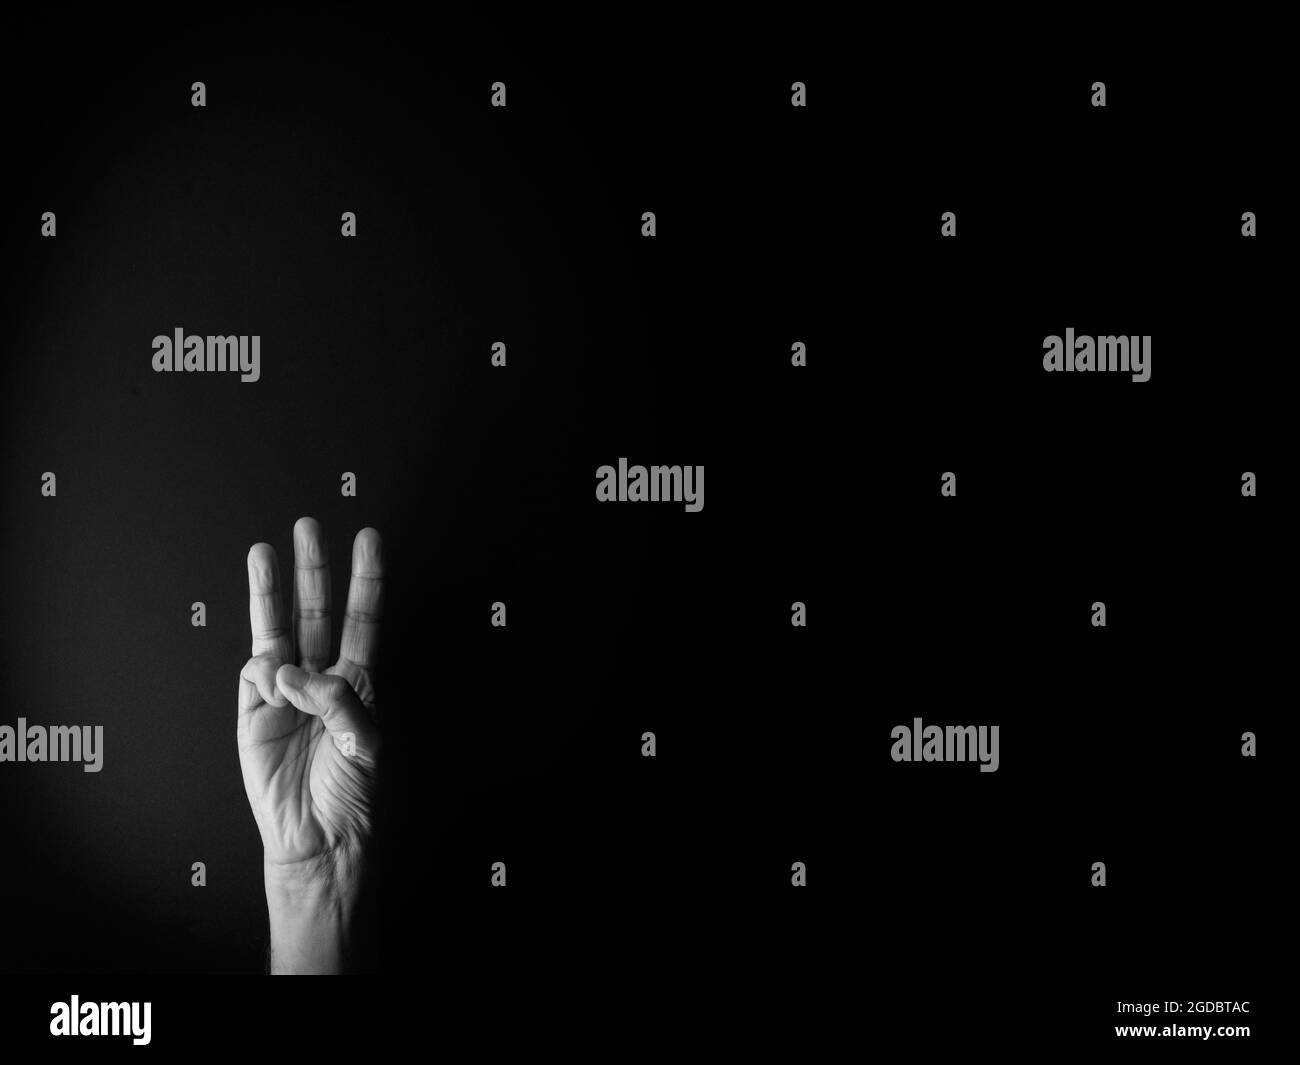 Dramatisches Schwarz-Weiß-Bild der männlichen Hand zeigt Zeichensprache Nummer drei vor schwarzem Hintergrund mit leerem Kopieplatz für Redakteure Stockfoto